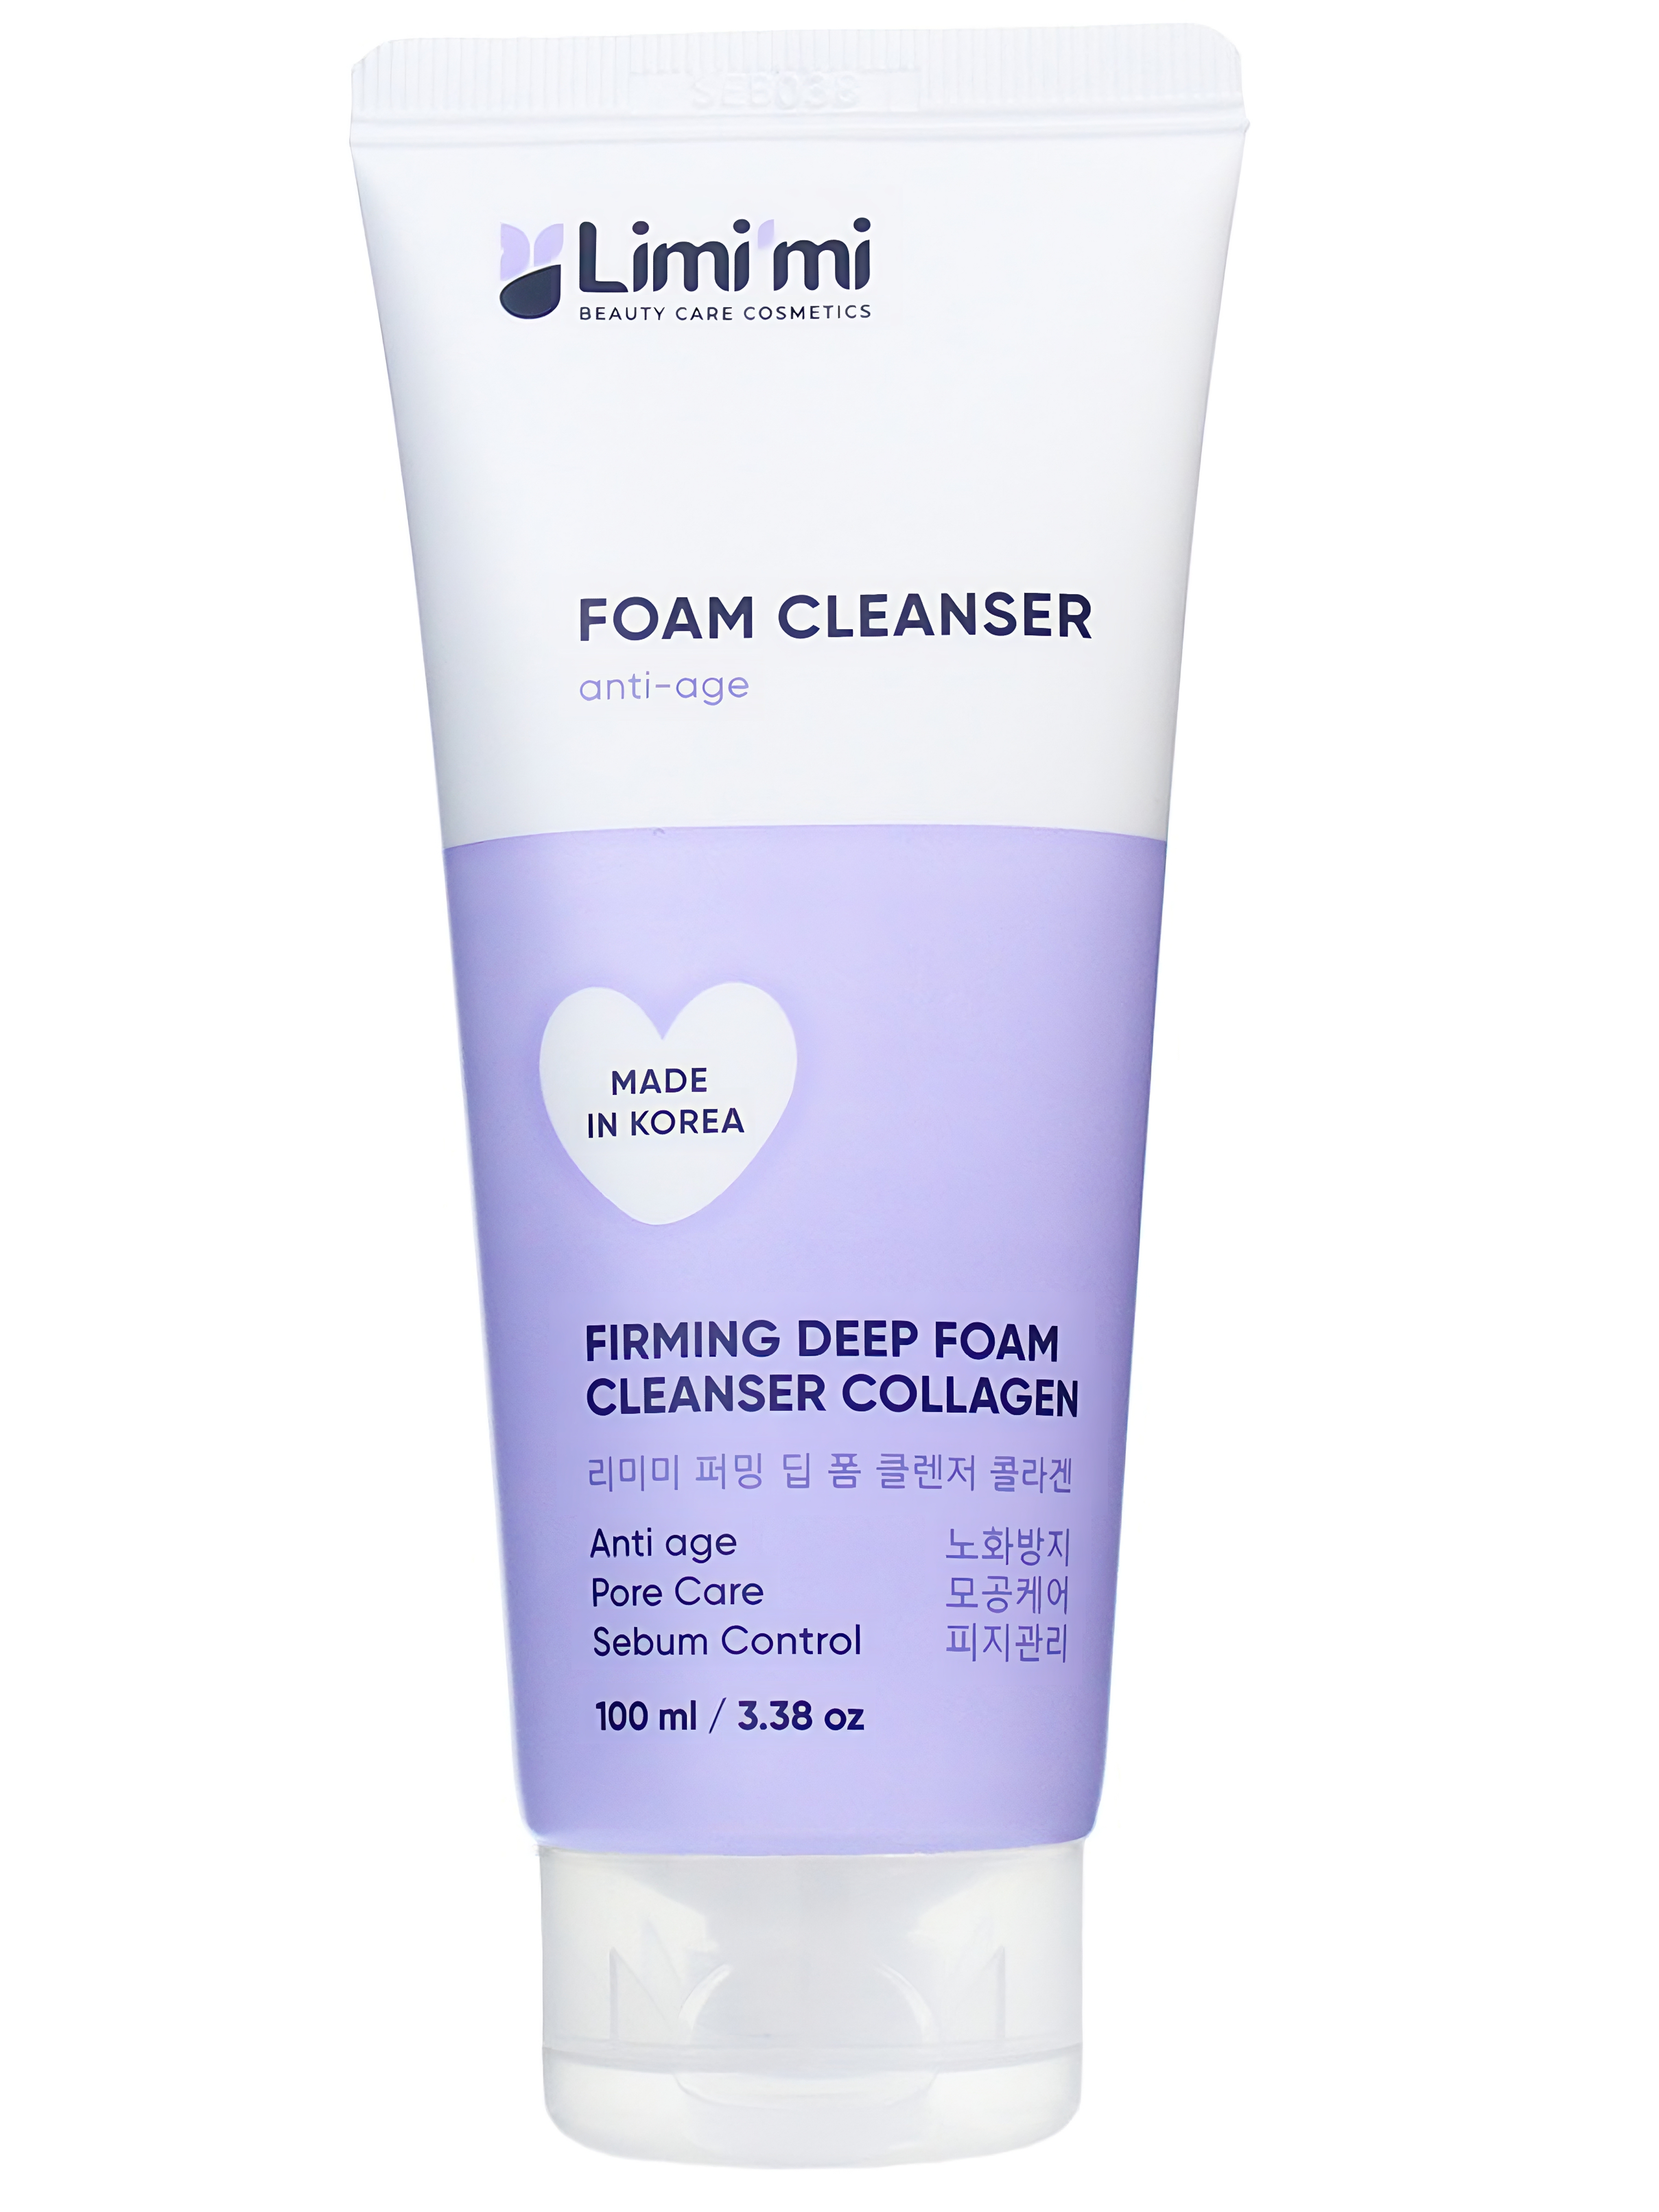 Пенка для умывания Limimi с коллагеном Firming Deep Foam Cleanser Collagen 100 мл набор для ухода limimi пенка для умывания с коллагеном и крем для рук против морщин